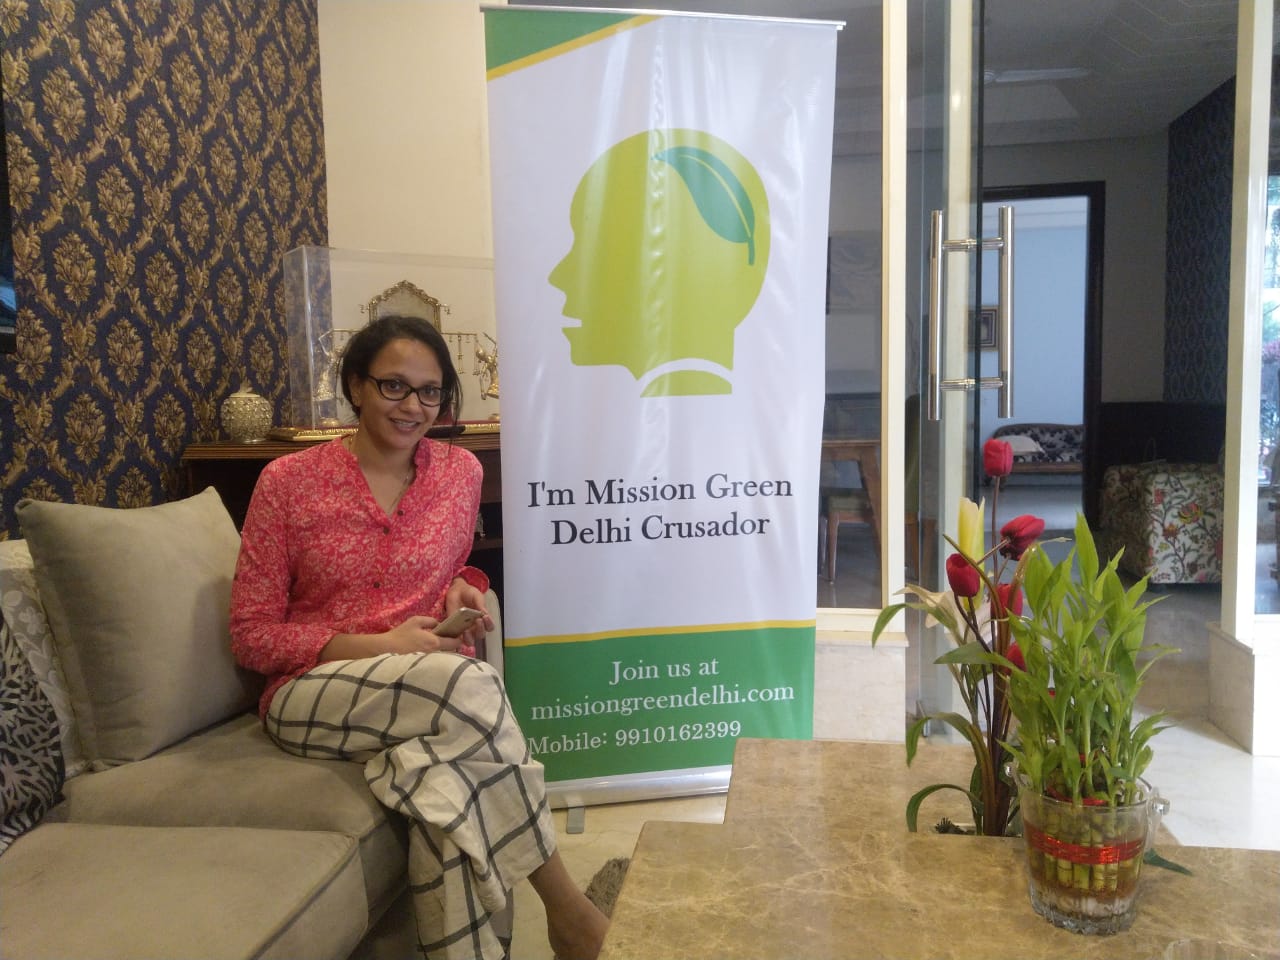 Green Talk hosted by Ayushi Jain at Green Park